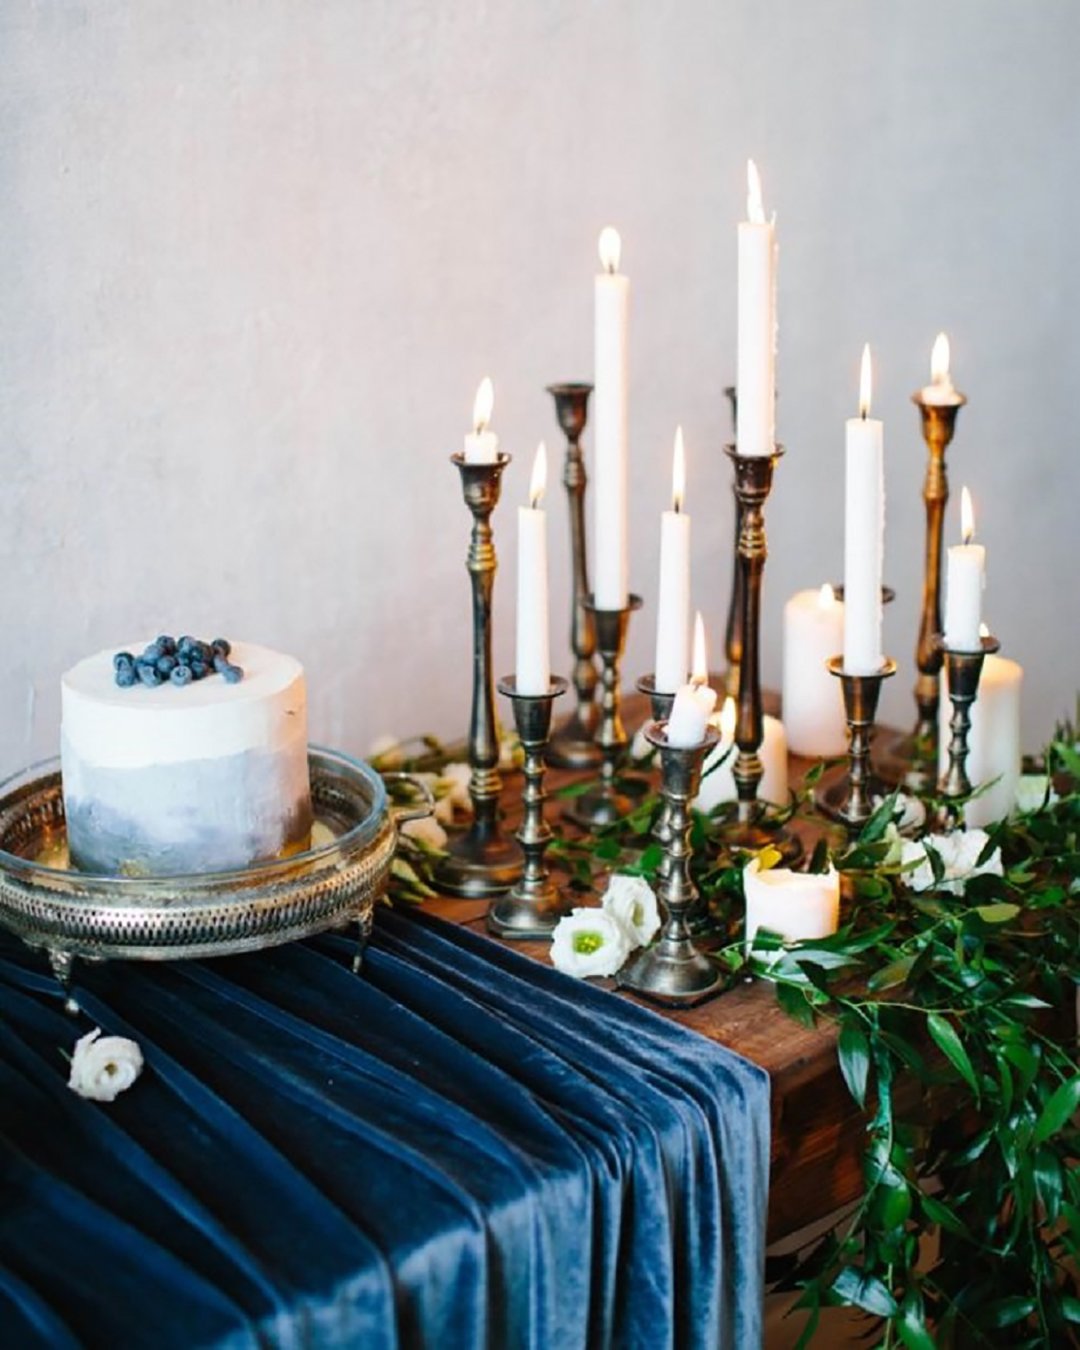 velvet wedding decor simple velvet cake decor everygoldendetail